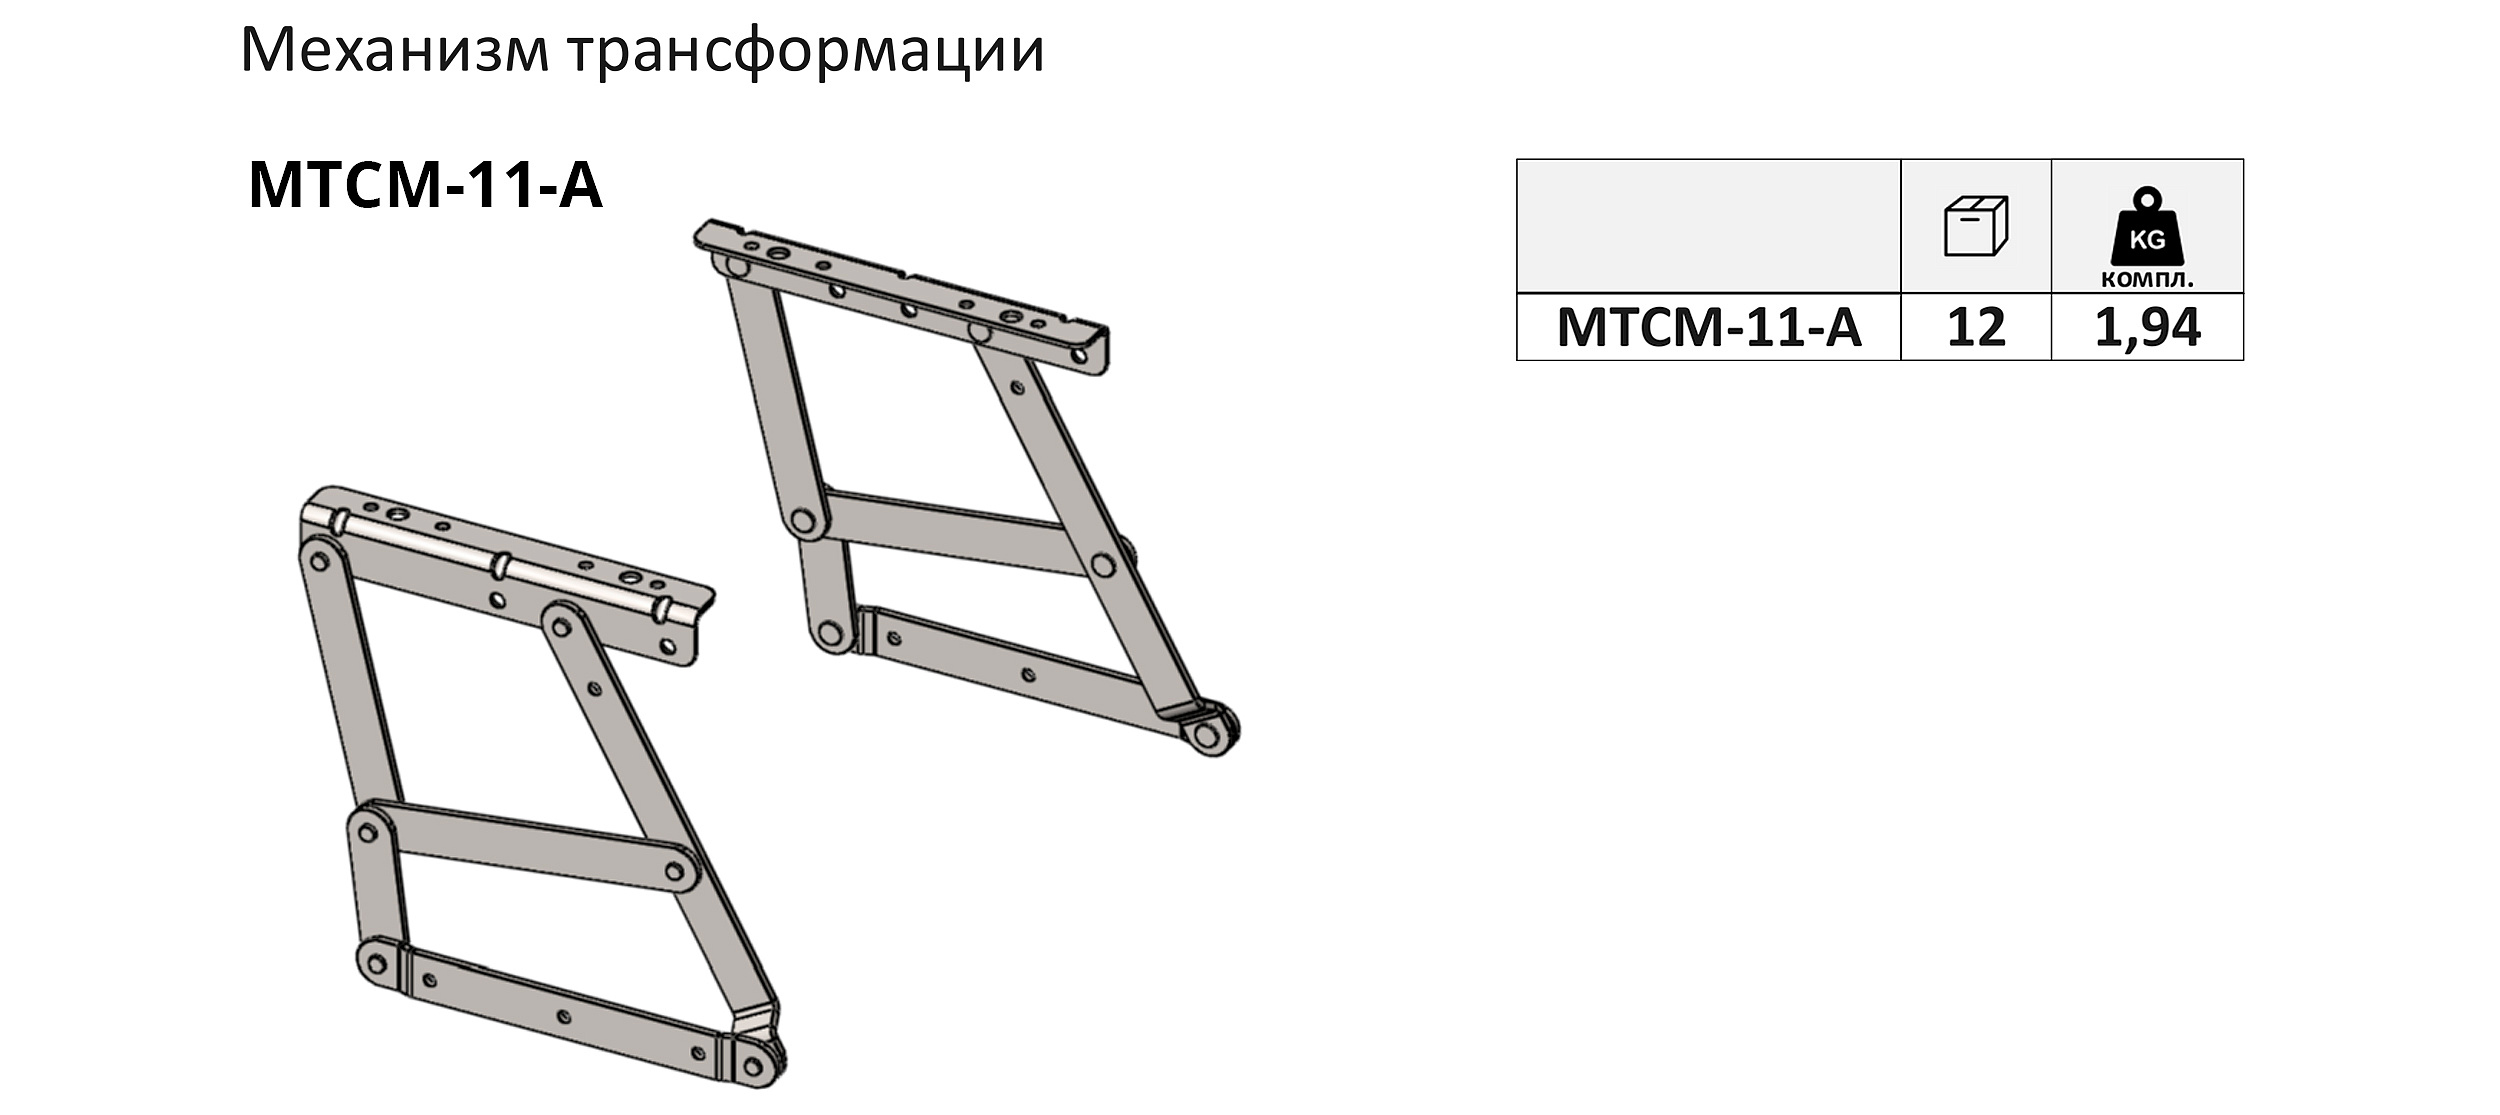 МТСМ-11-А